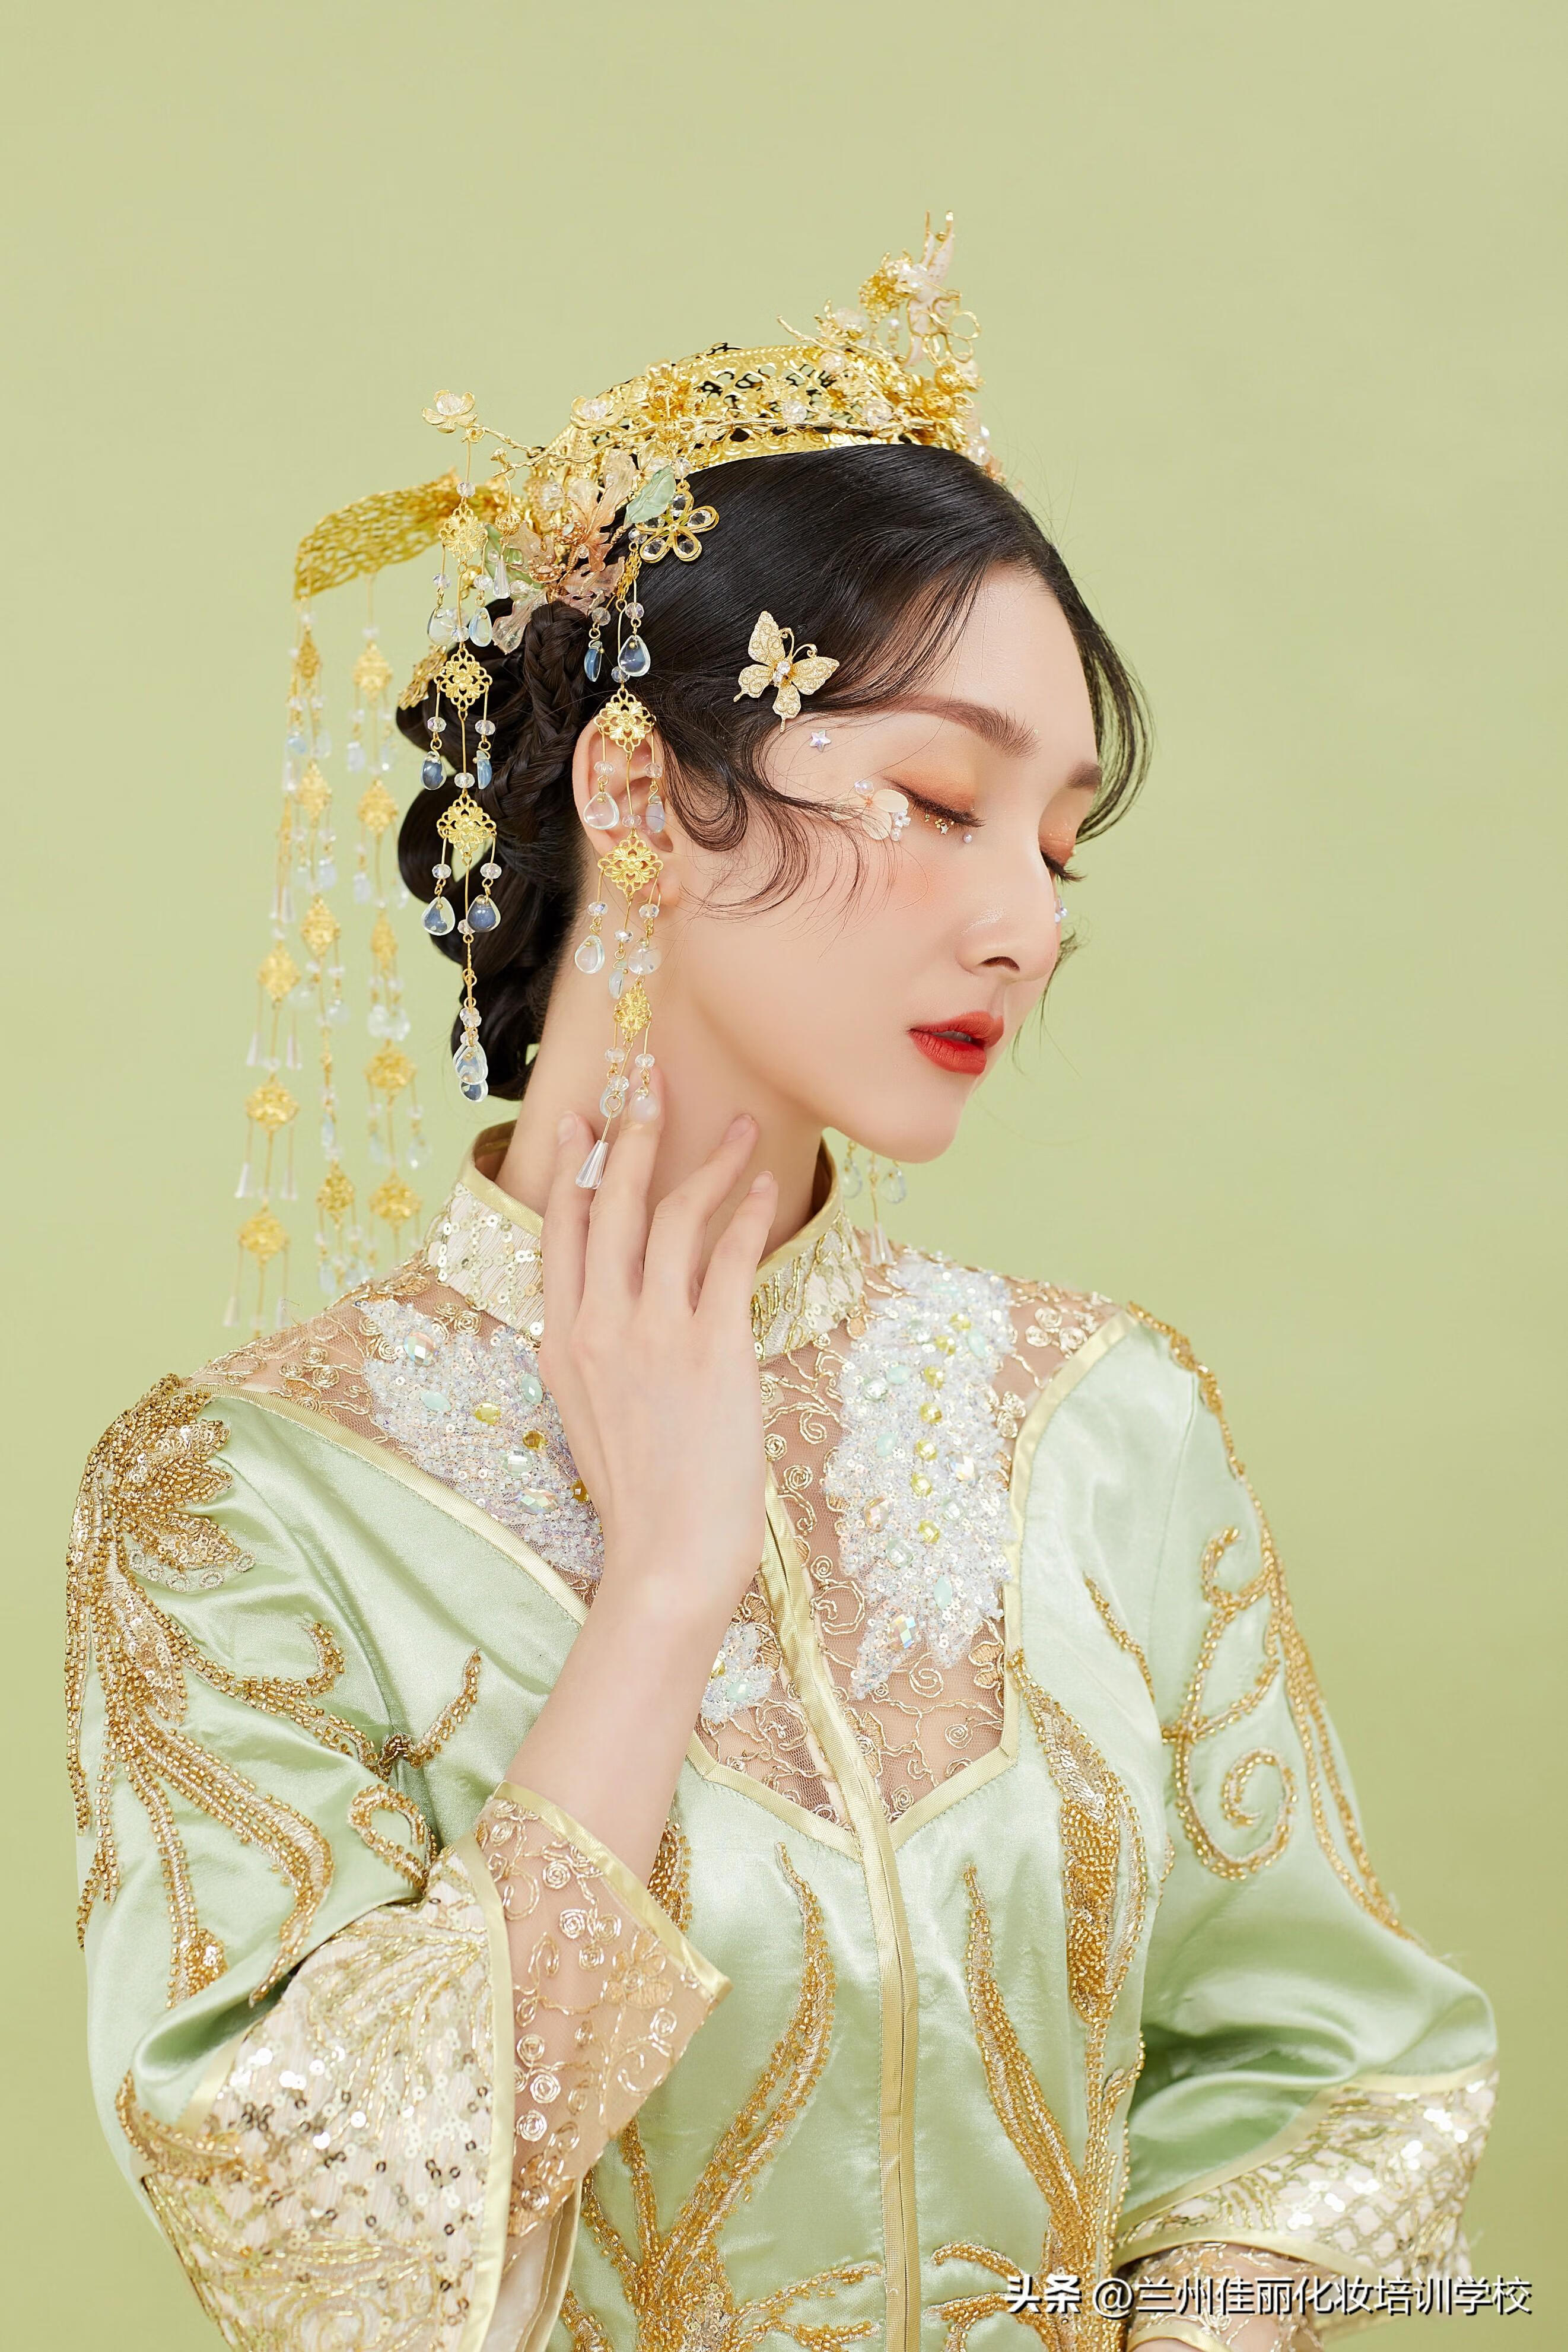 国潮当道,在婚纱风格的选择上,越来越多的新人偏向国风,中式,中式新娘